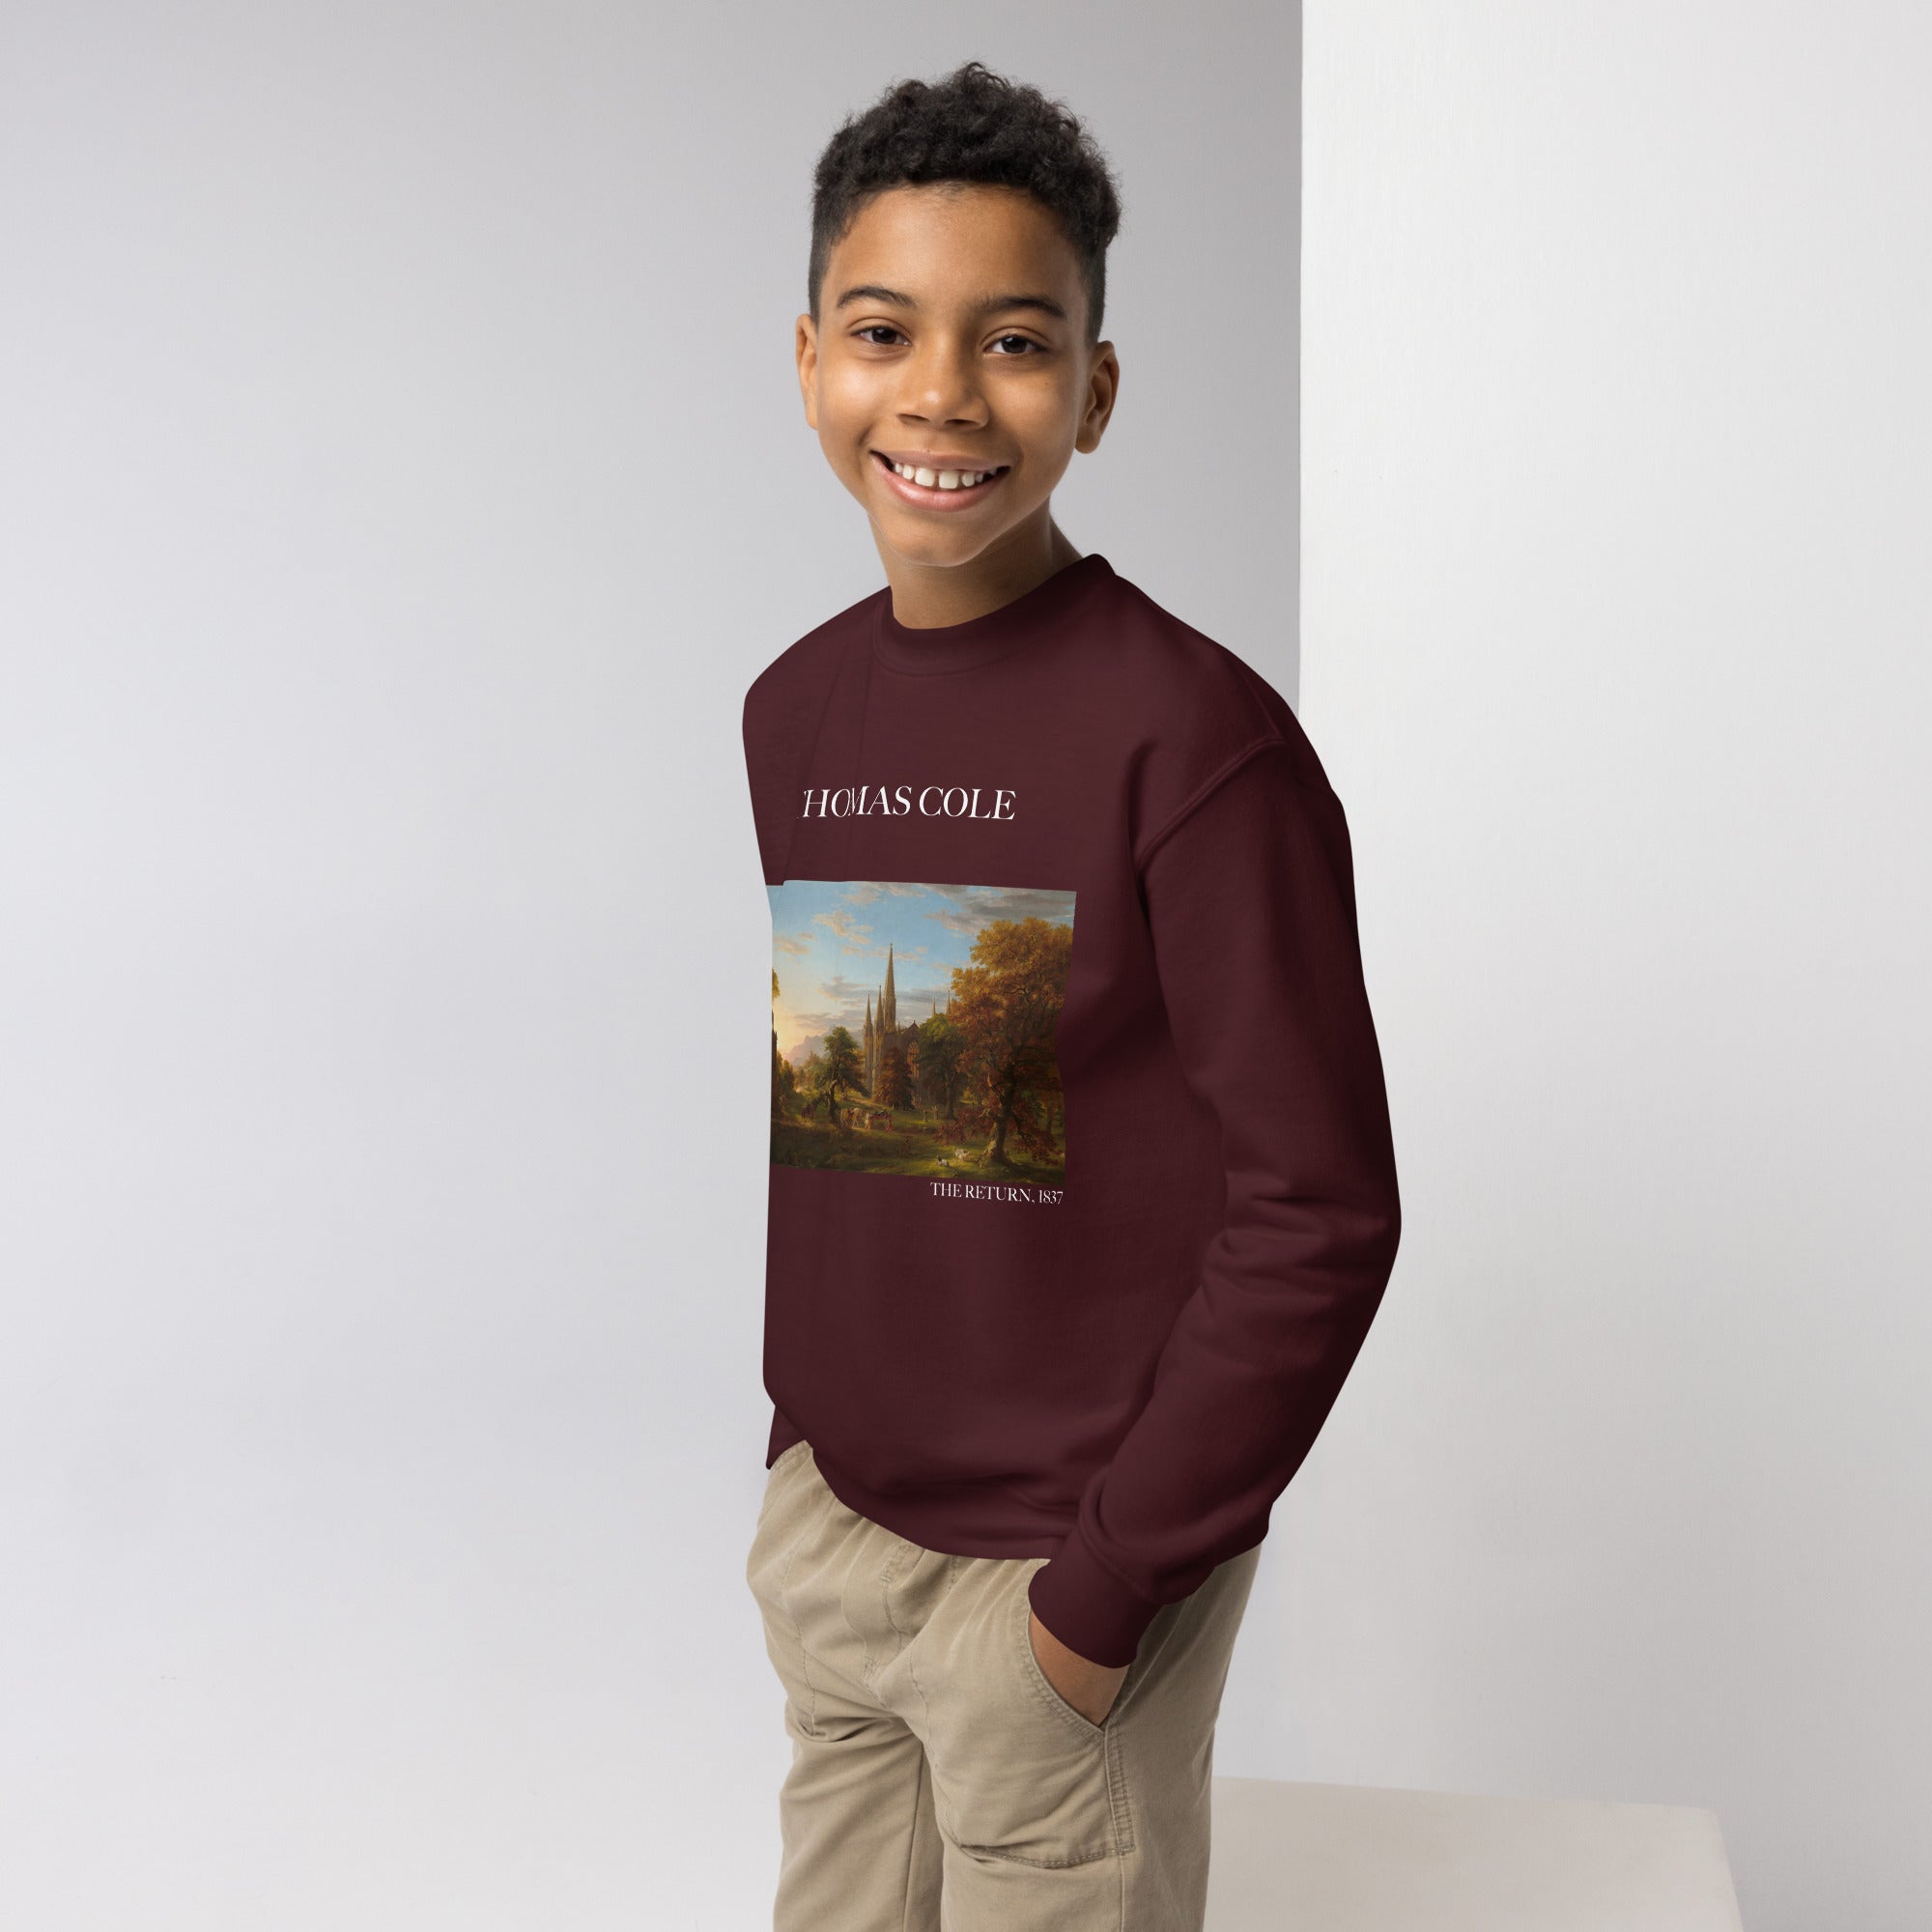 Thomas Cole „Die Rückkehr“ – Sweatshirt mit Rundhalsausschnitt, berühmtes Gemälde | Premium-Kunst-Sweatshirt für Jugendliche